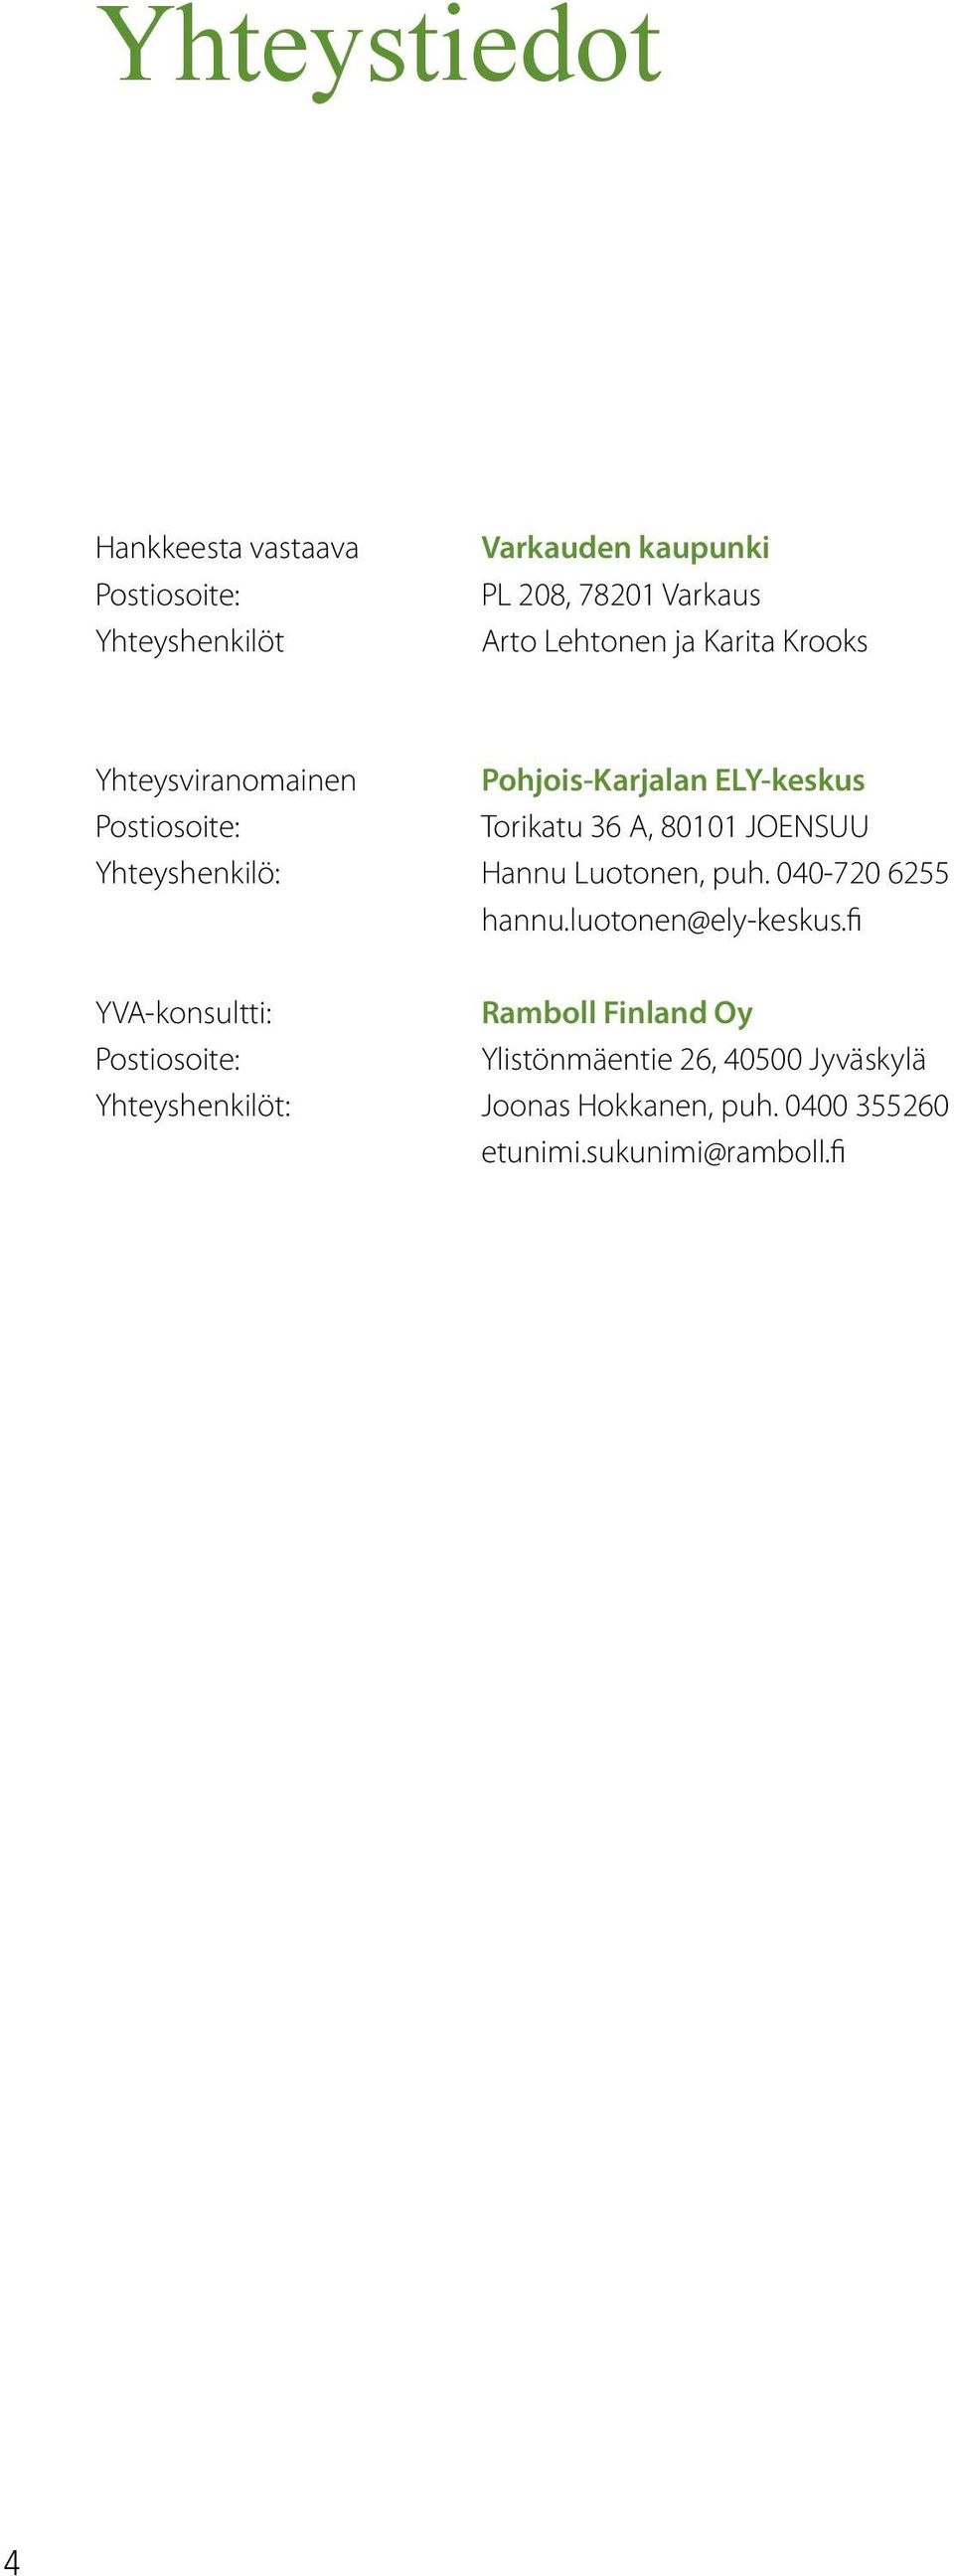 Yhteyshenkilö: Hannu Luotonen, puh. 040-720 6255 hannu.luotonen@ely-keskus.